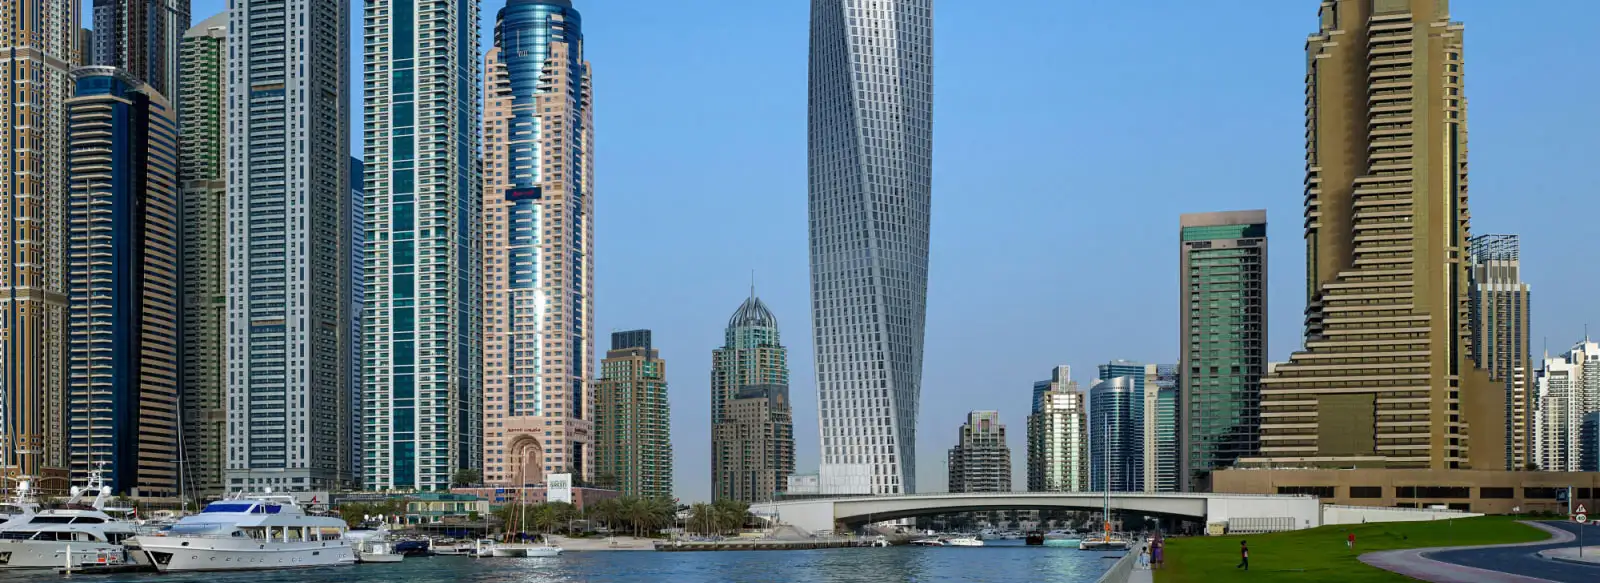 Cayan Tower by Cayan Group at Dubai Marina